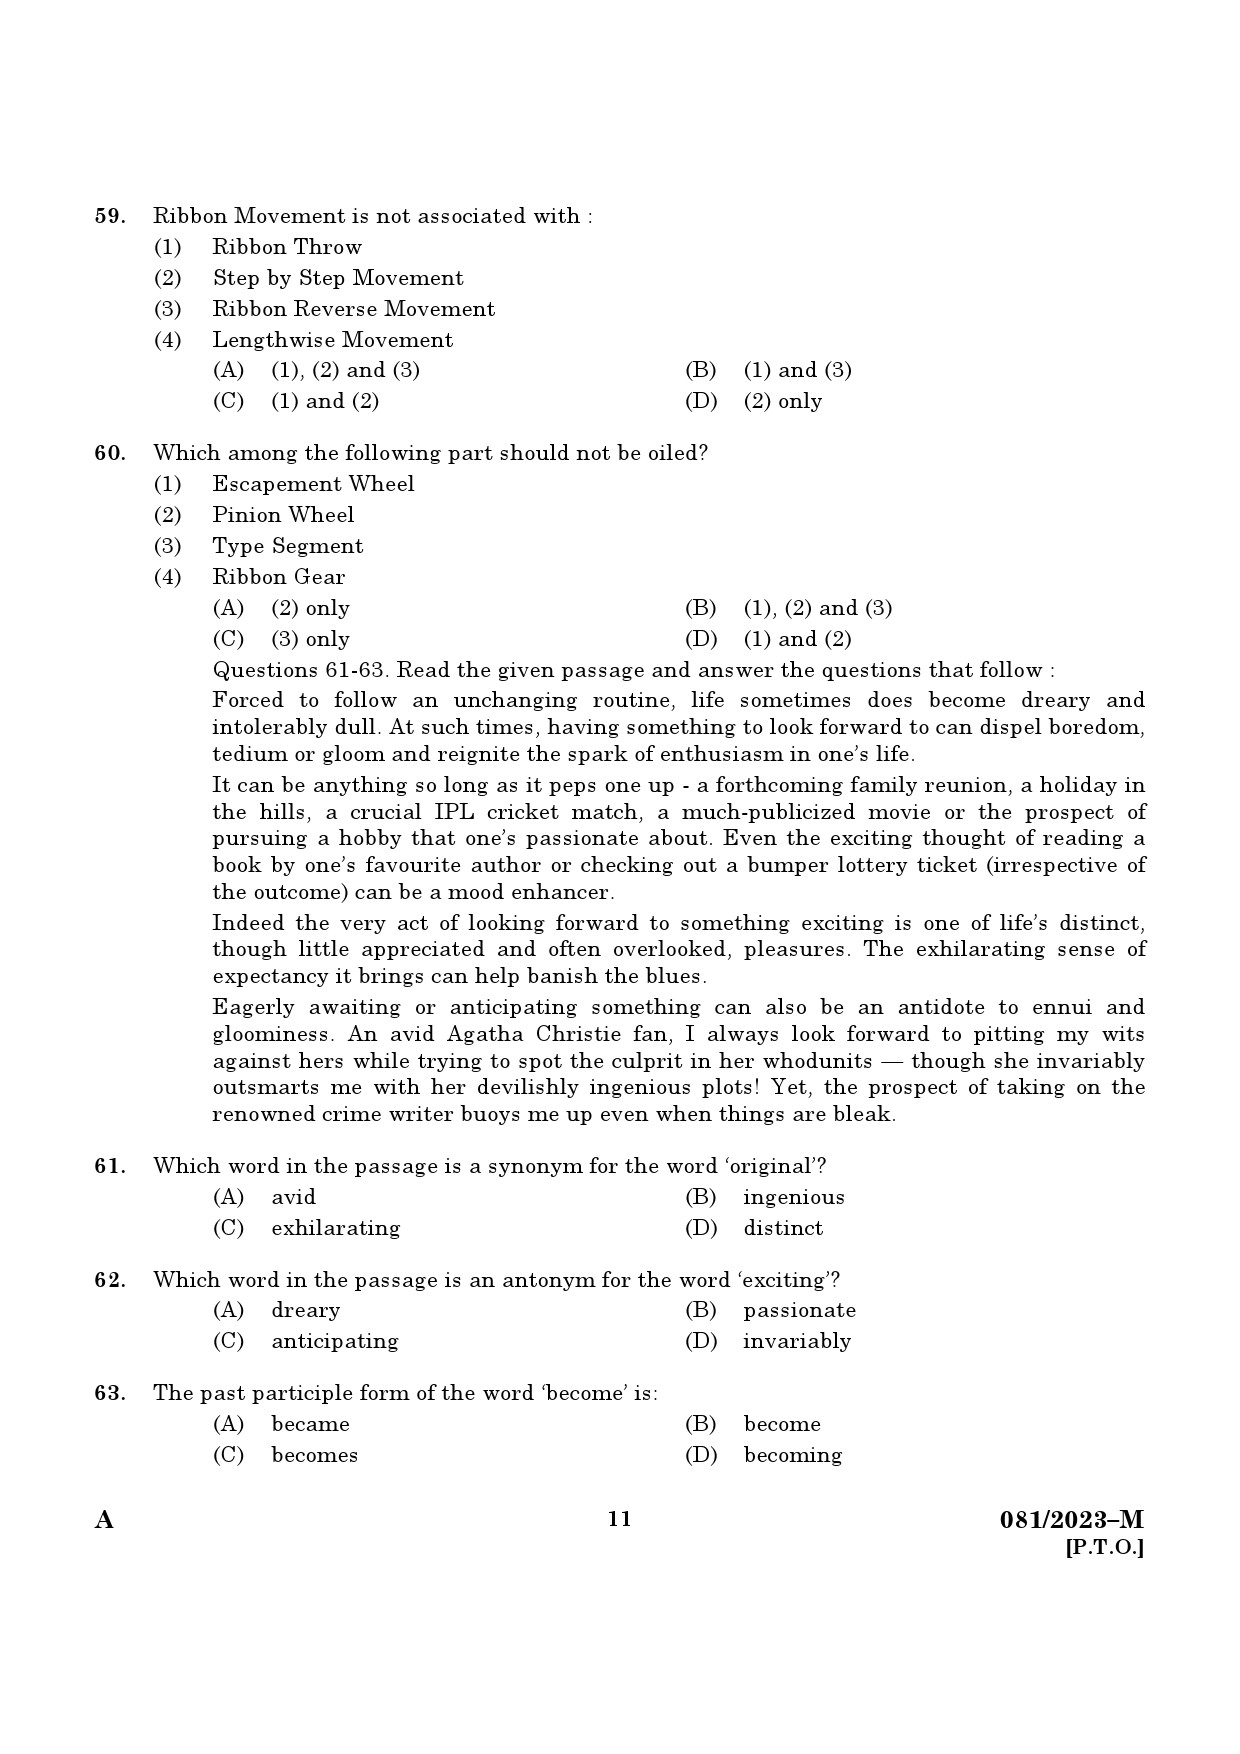 KPSC Clerk Typist Malayalam Exam 2023 Code 0812023 M 9